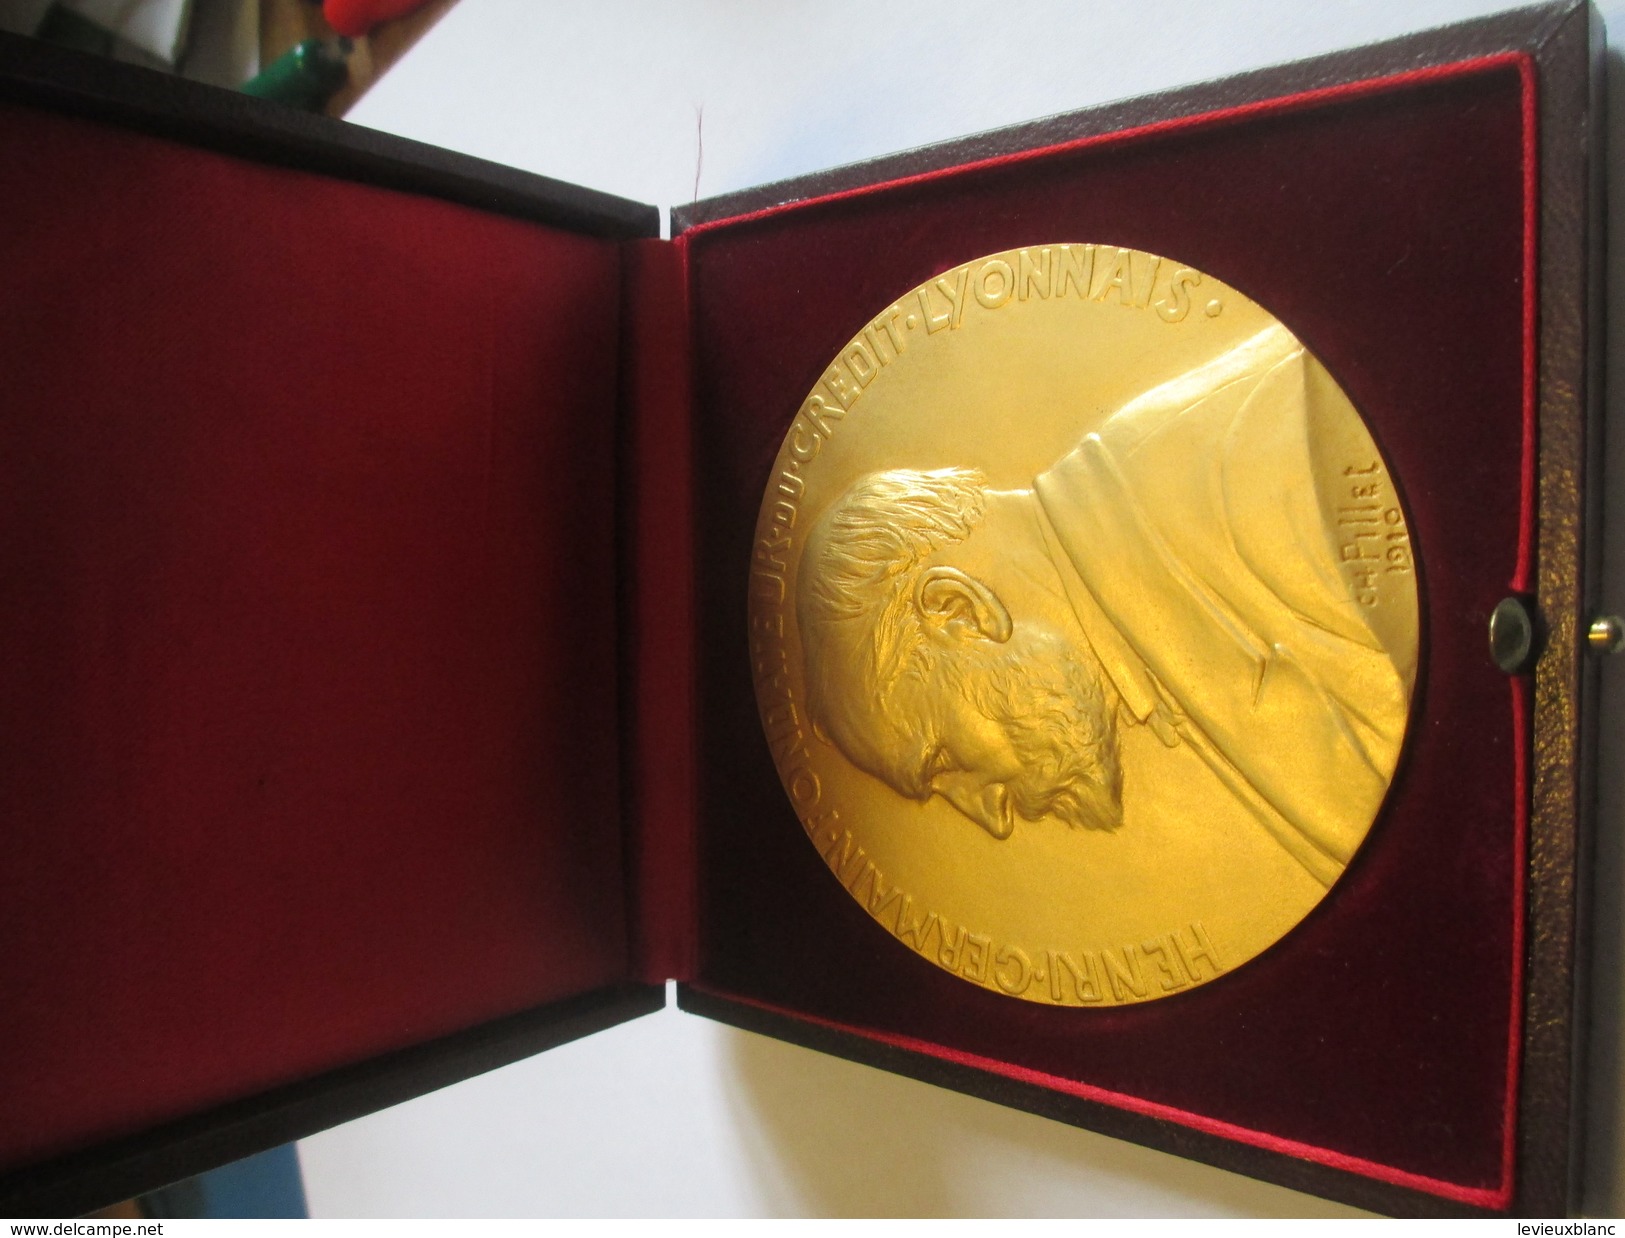 Médaille De Table/ Henri Germain Fondateur  Crédit Lyonnais/25 Années De Service/Pierre Dirson/Pillet/ Vers1970   MED149 - France